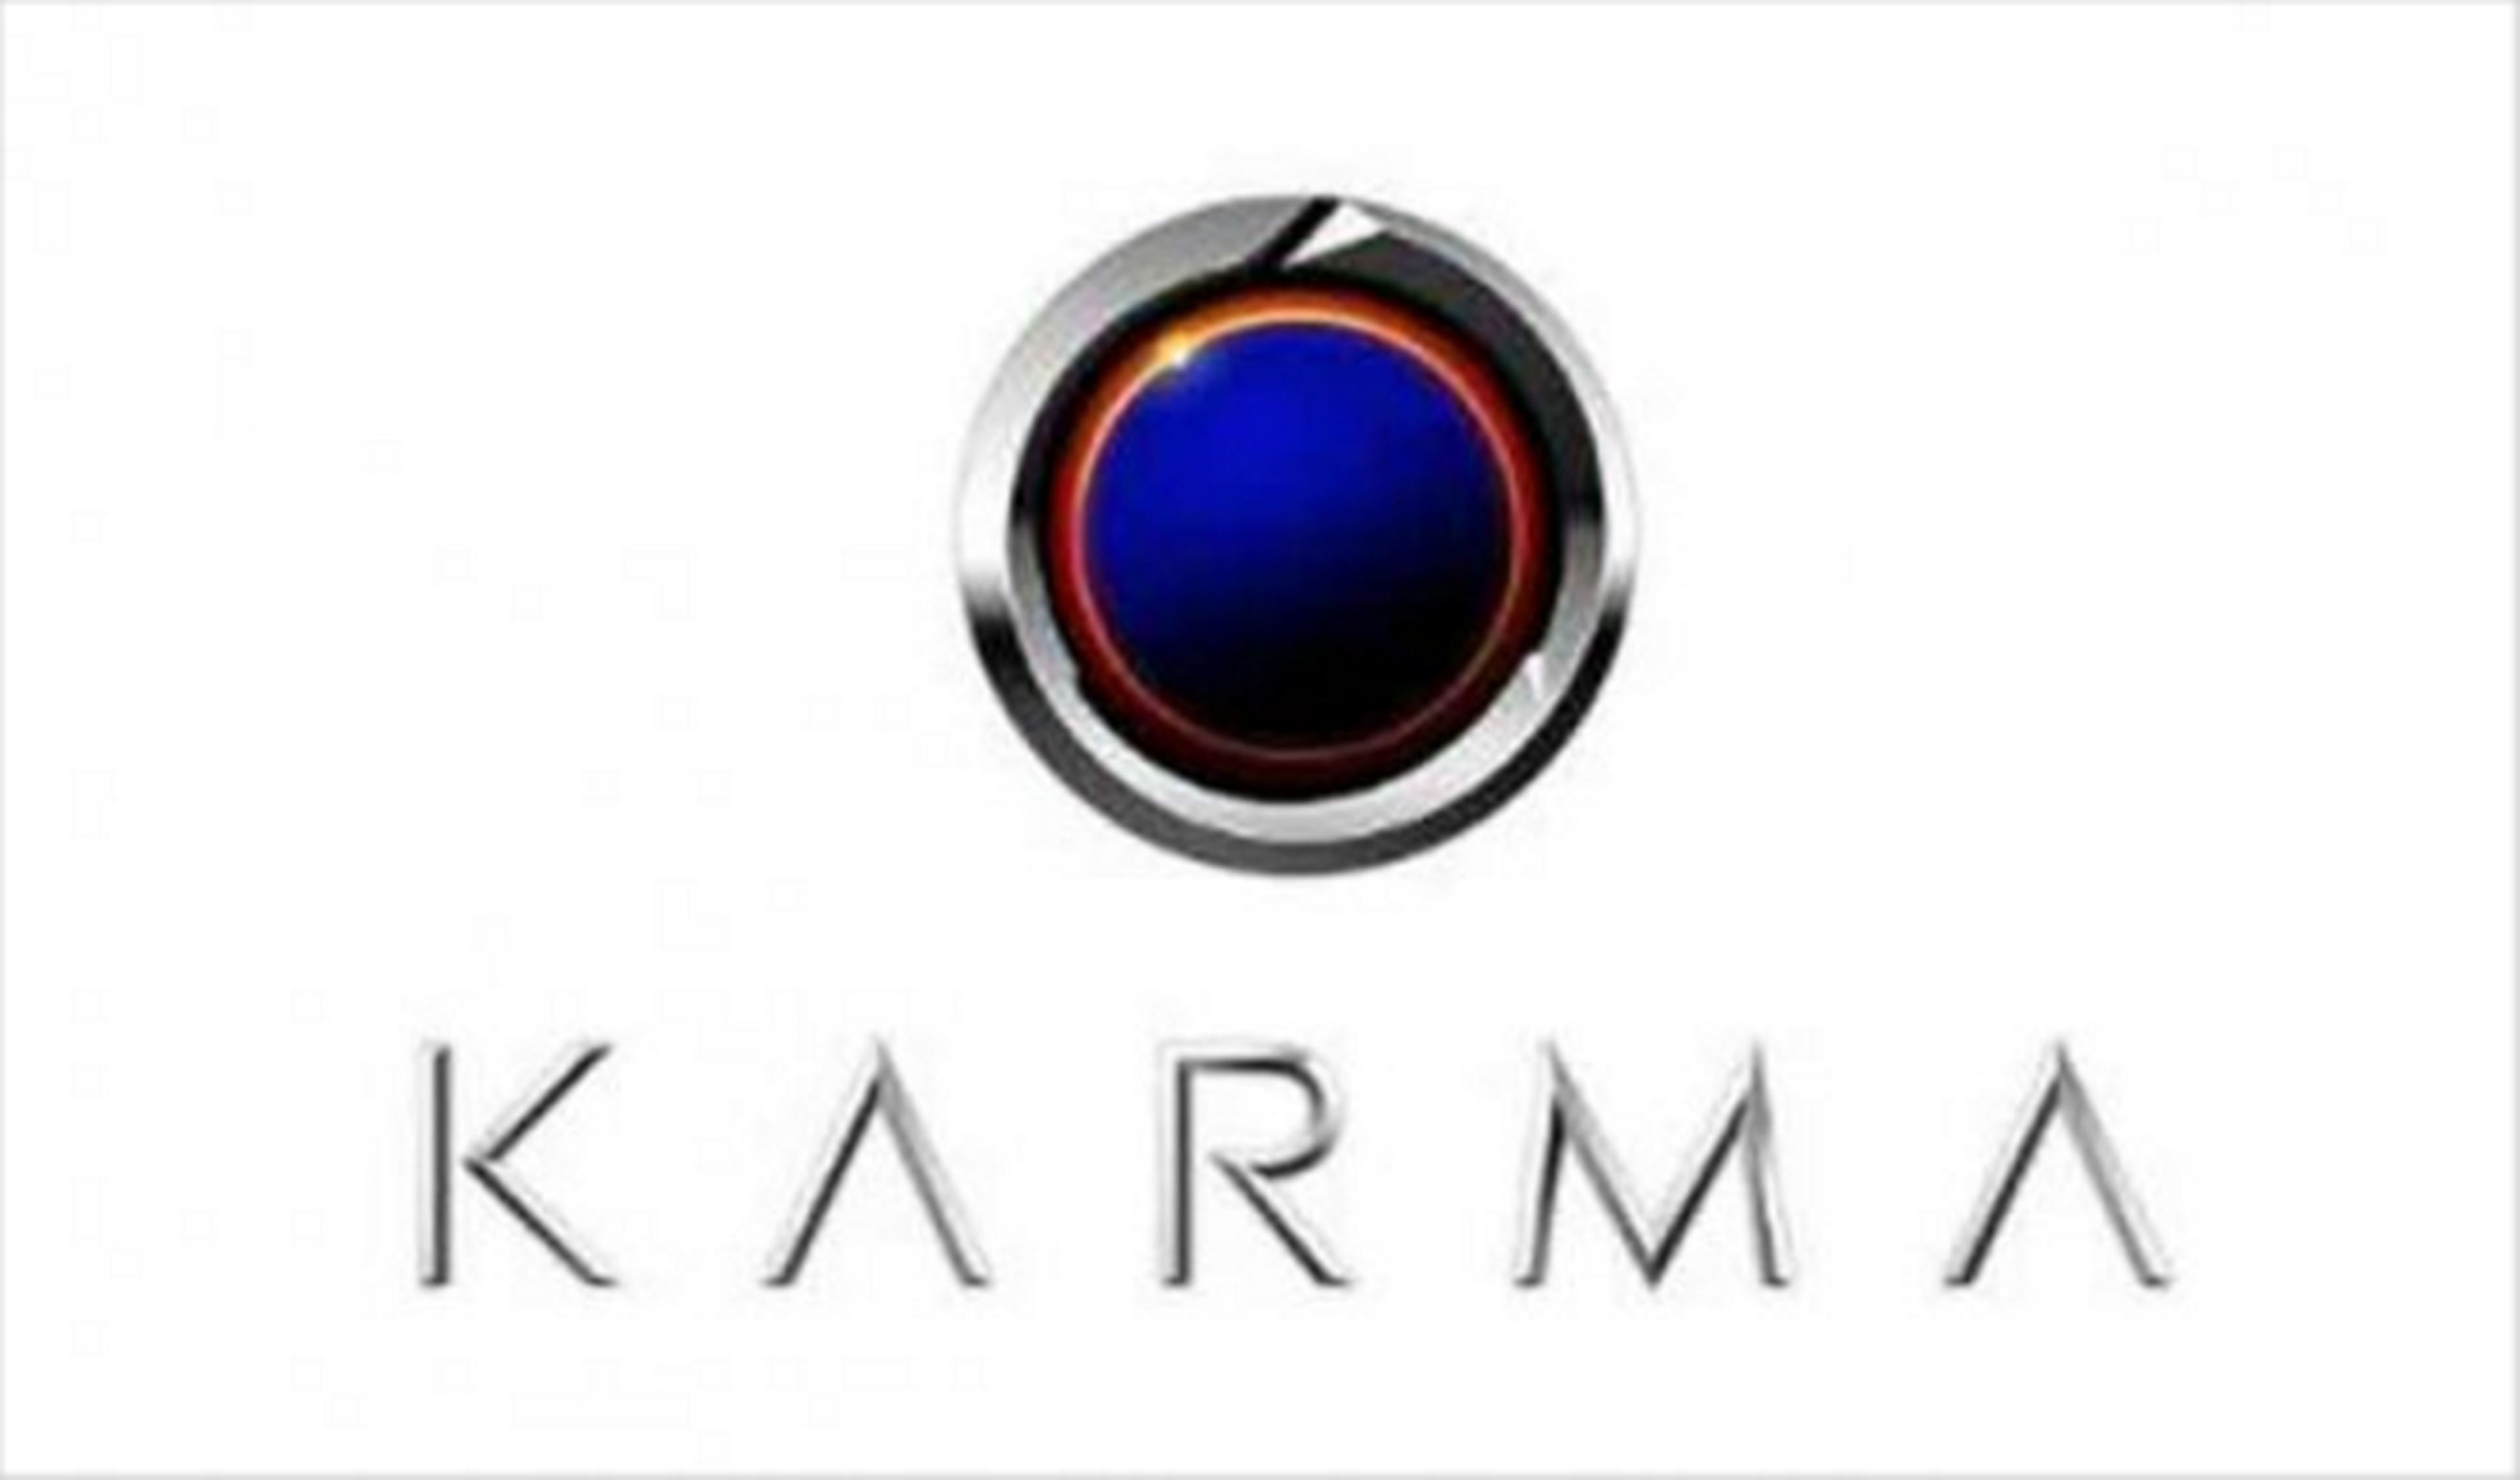 BMW suministrará componentes a Karma Automotive